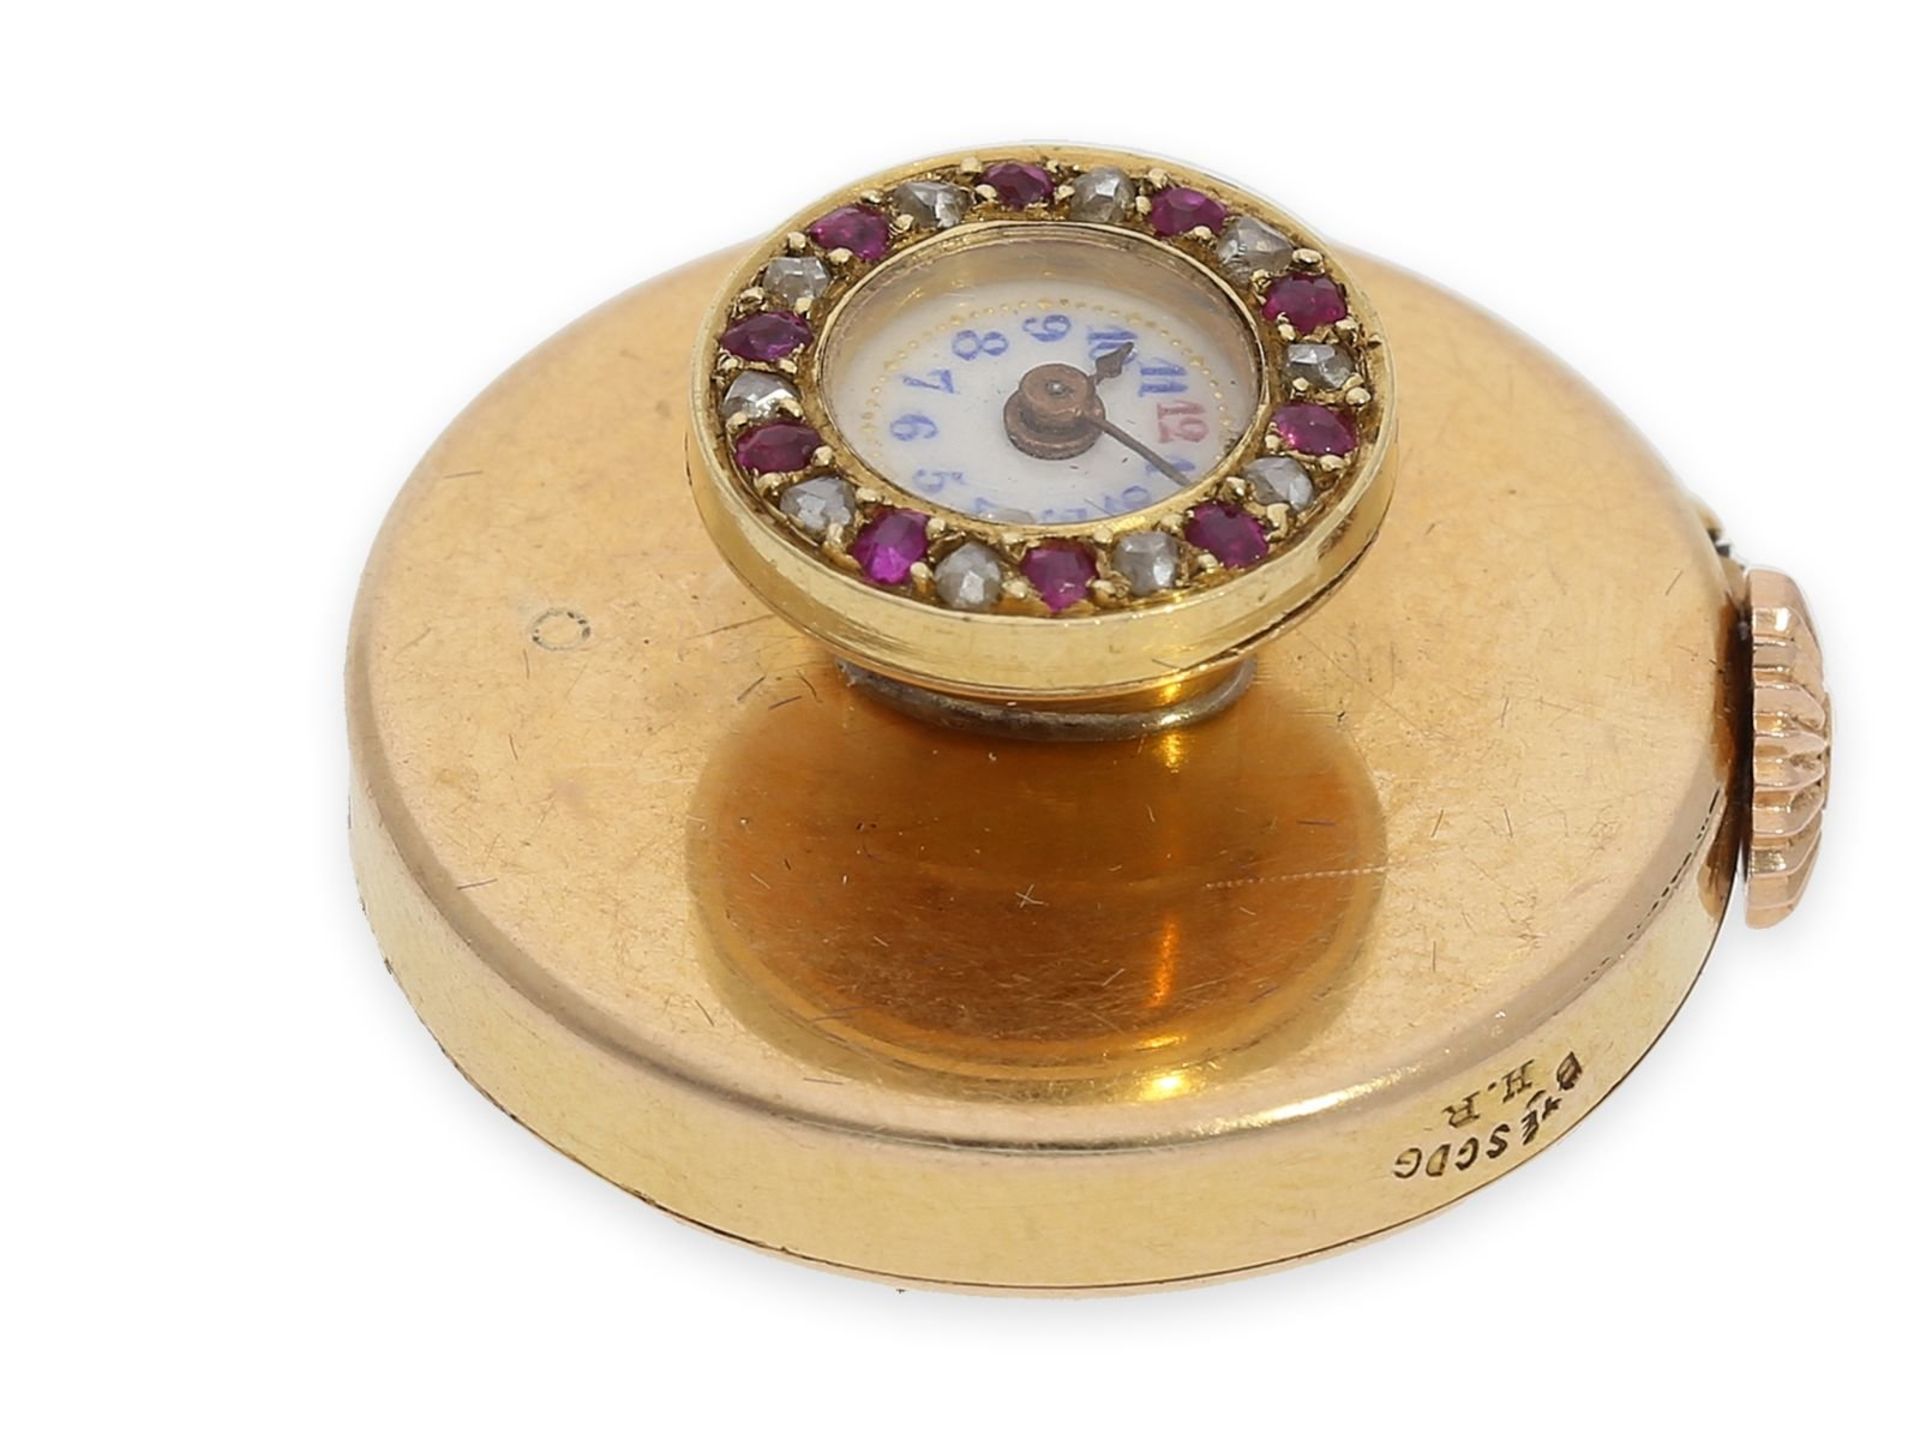 Knopfloch-Uhr: extrem rare Knopflochuhr in 18K Gold mit Diamant- und Rubinbesatz, punziert "bté s.g. - Bild 2 aus 5